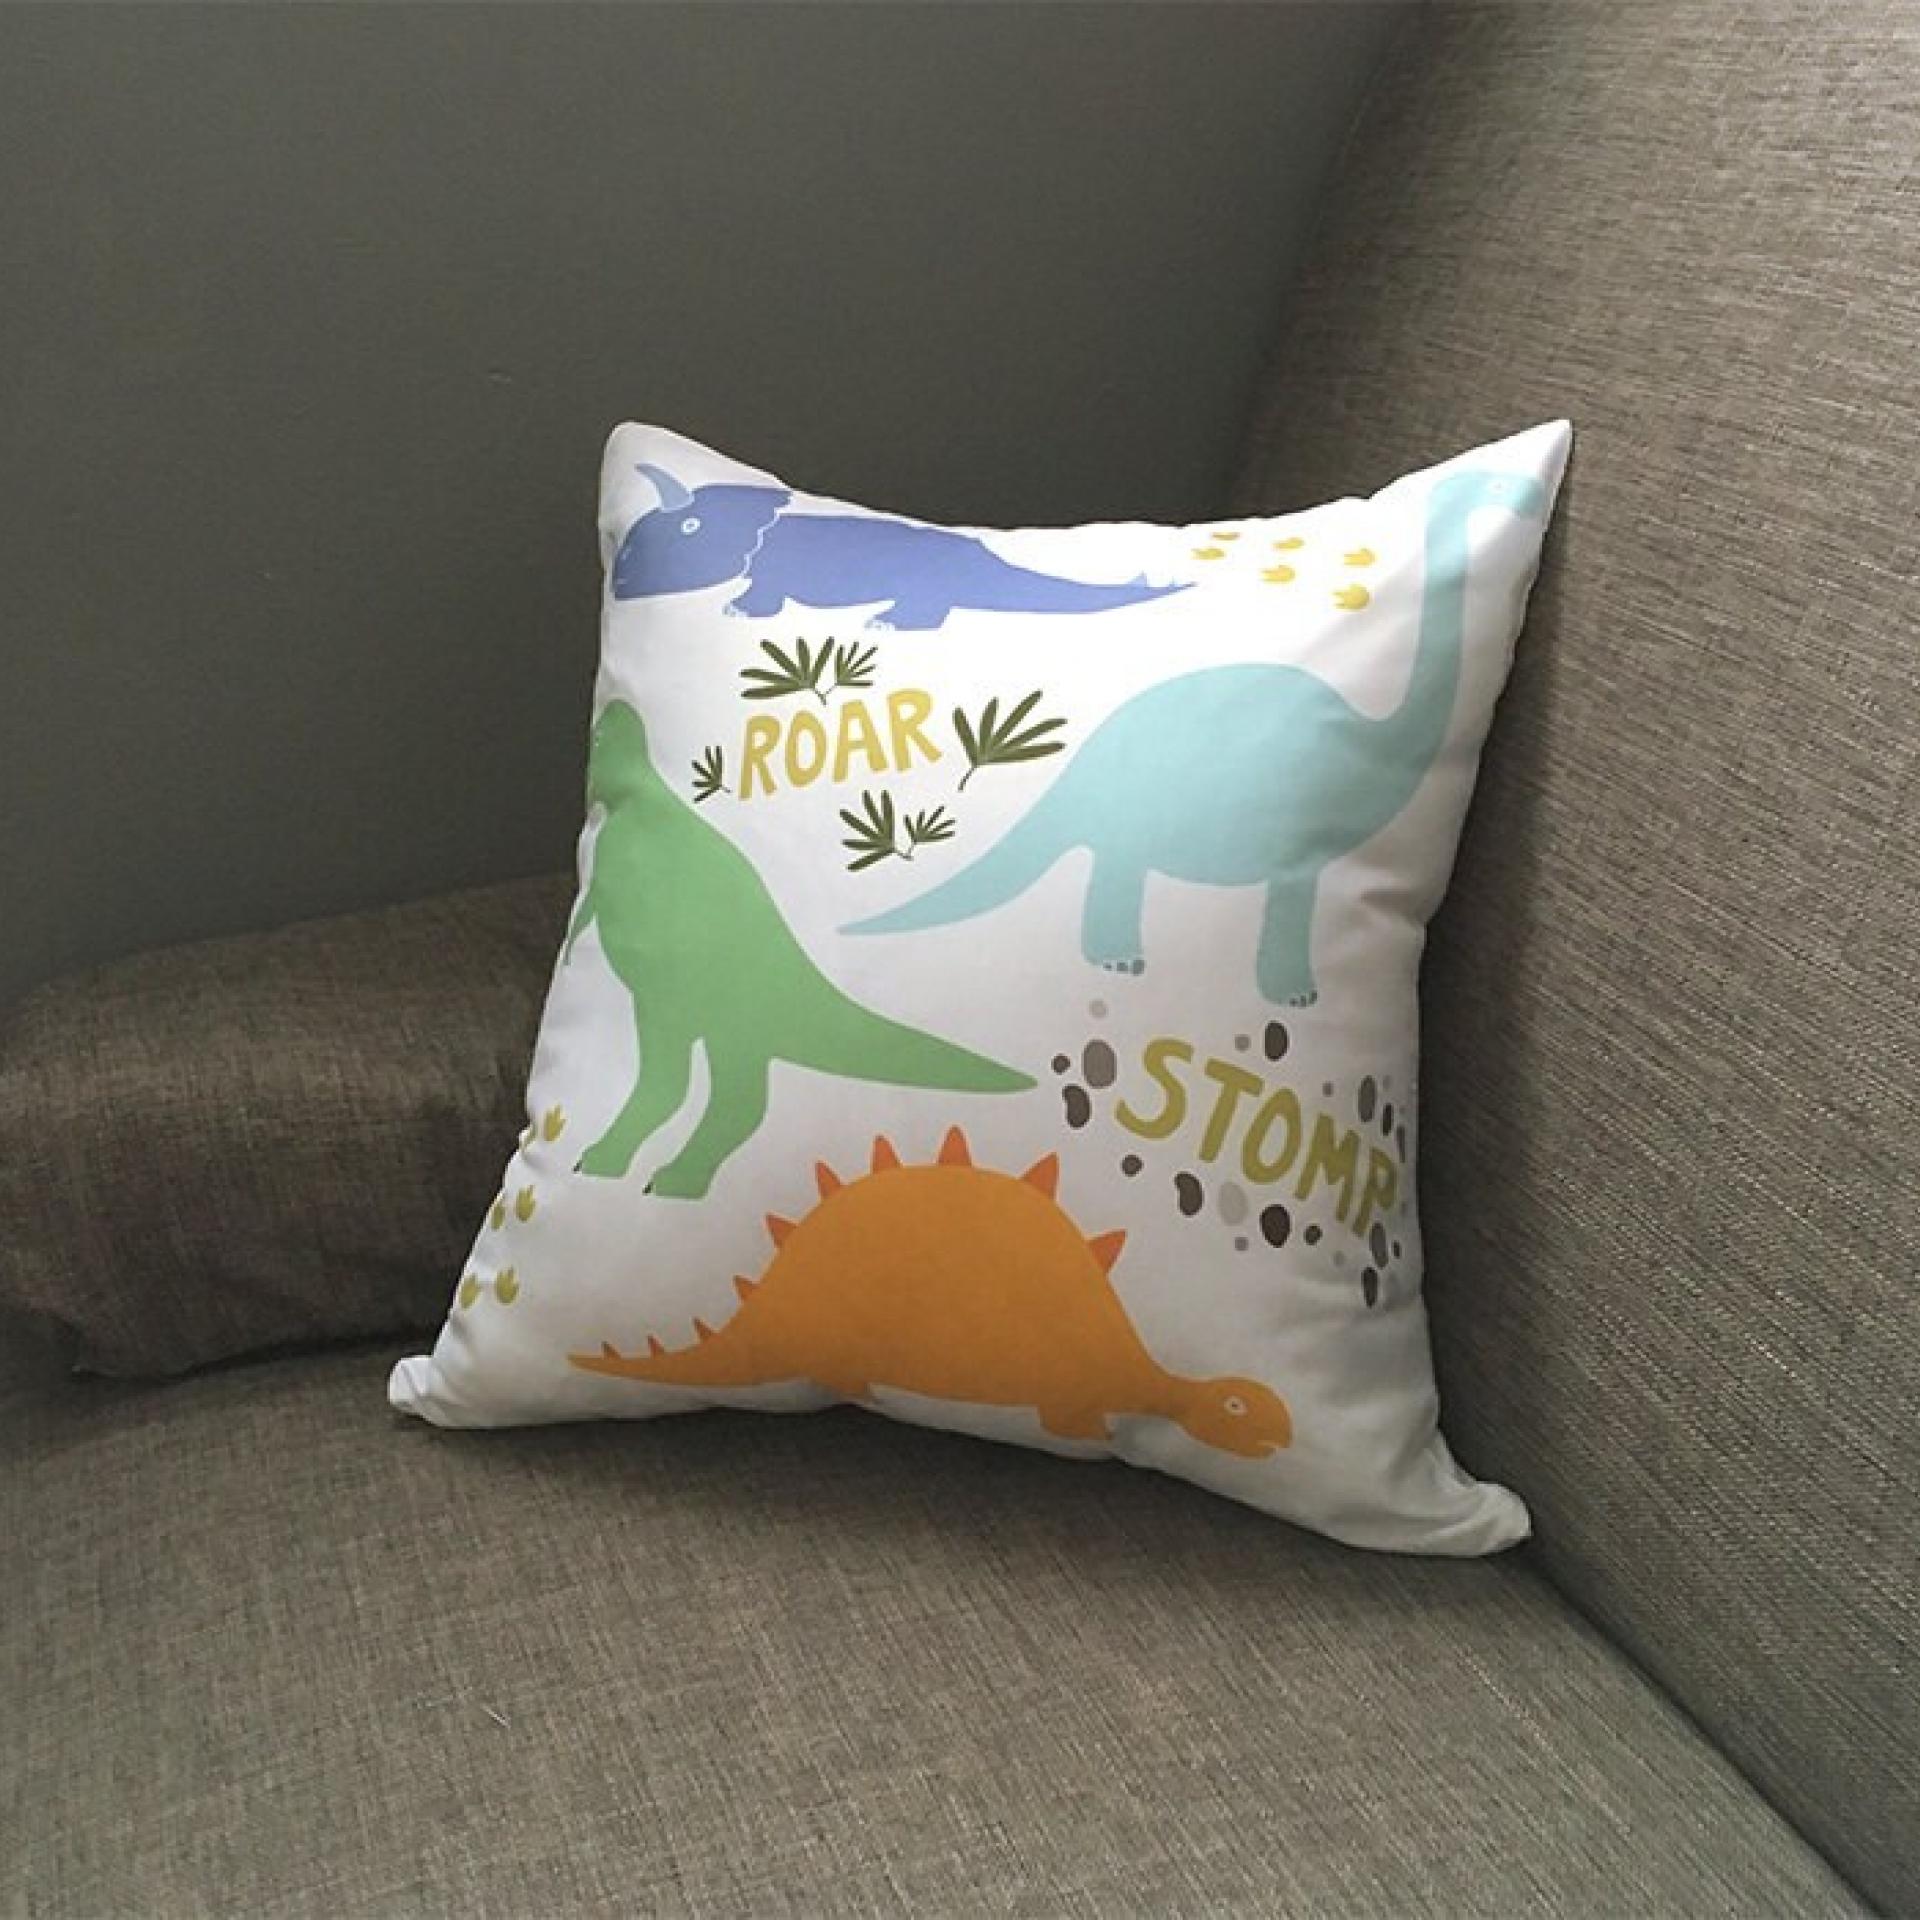 Dinosaur Cushion Cover, Dinosaur Pillow, Kids Cushions, Dinosaur Gift, Animal Cushion, Dinosaur Decor, Pillow Cover, Playroom Cushion, T Rex